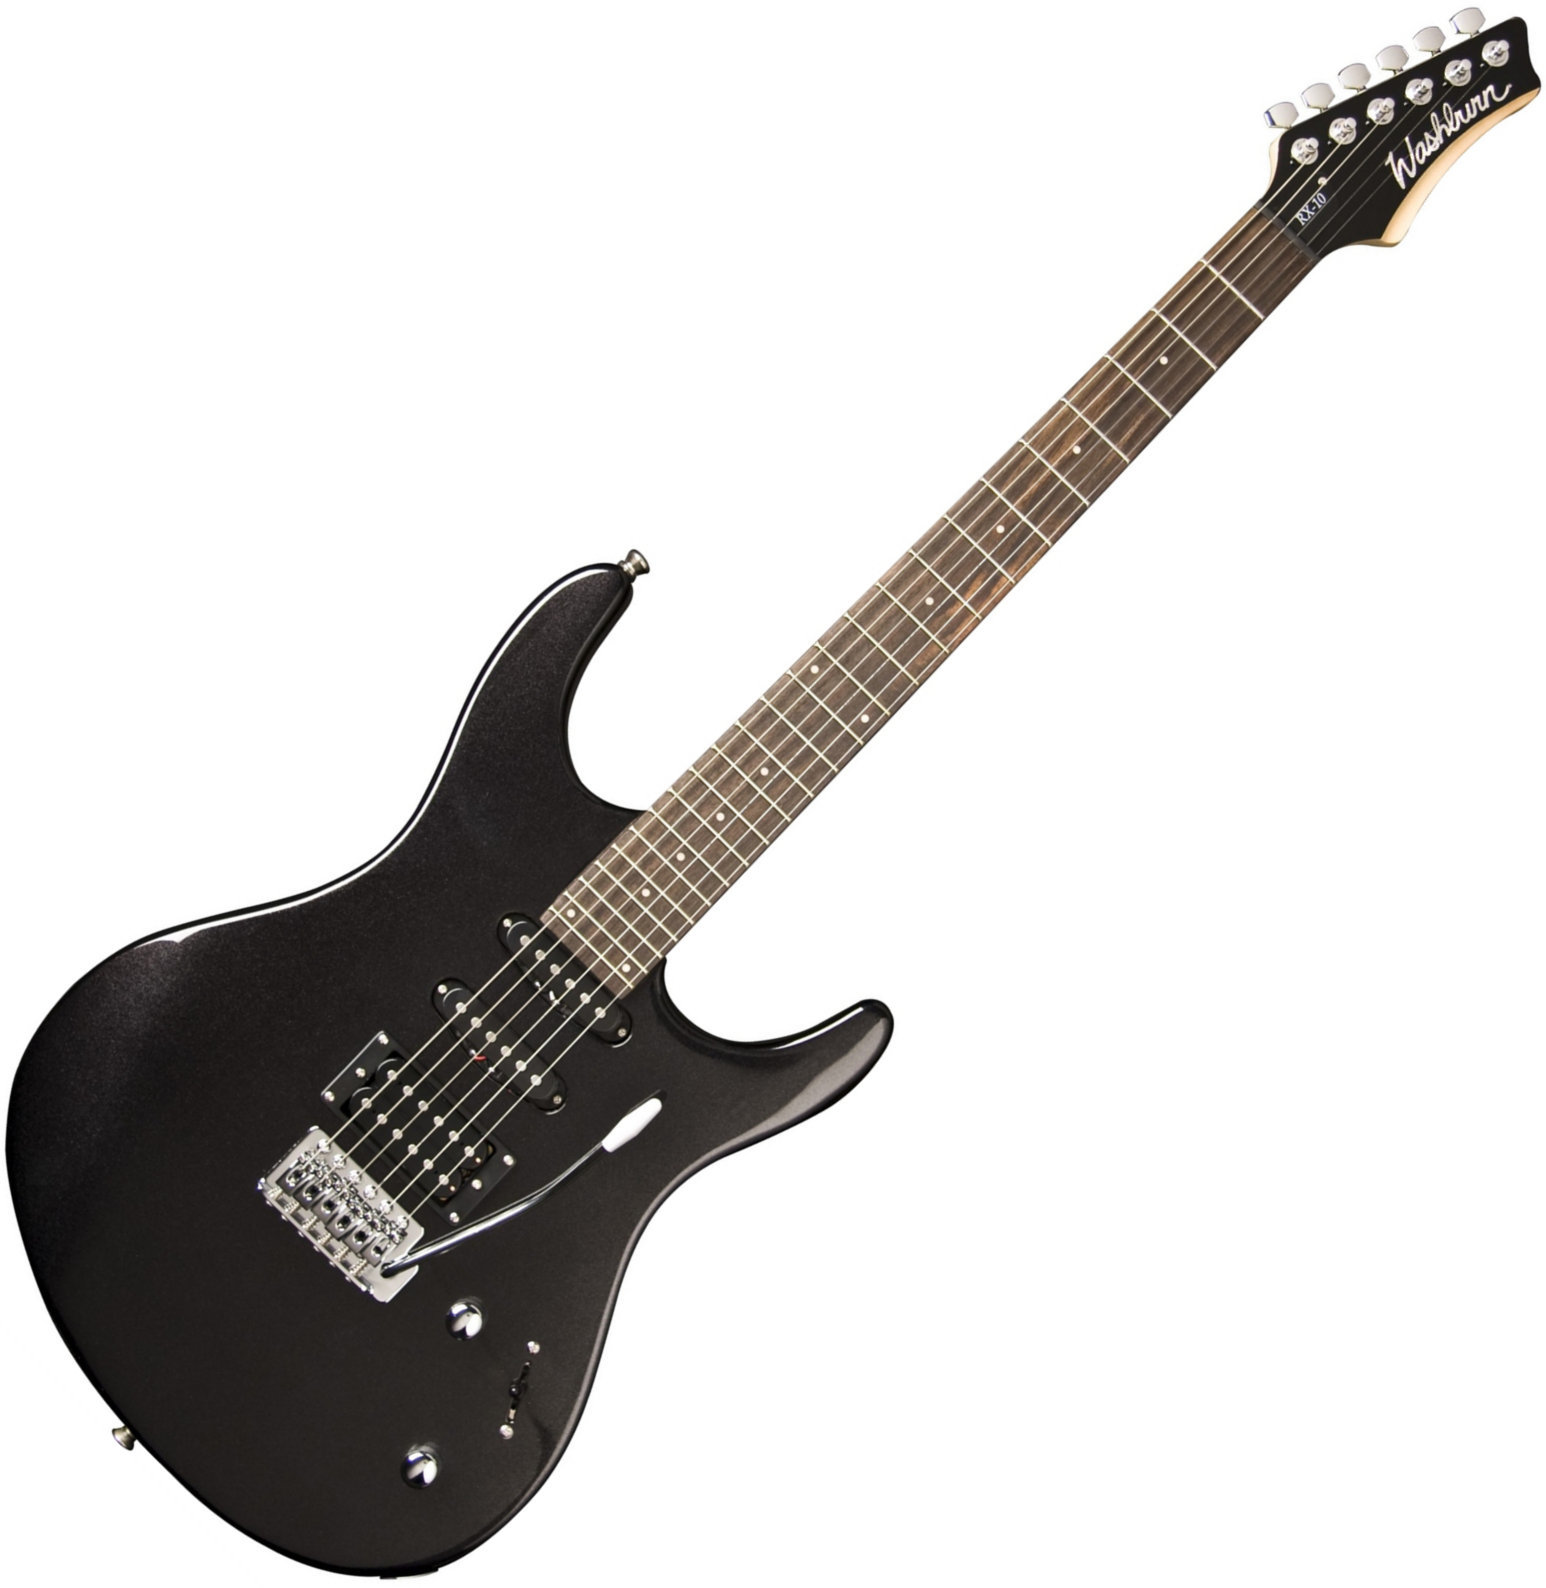 Washburn RX-10 エレキギター ラメメタリックブラック - ギター